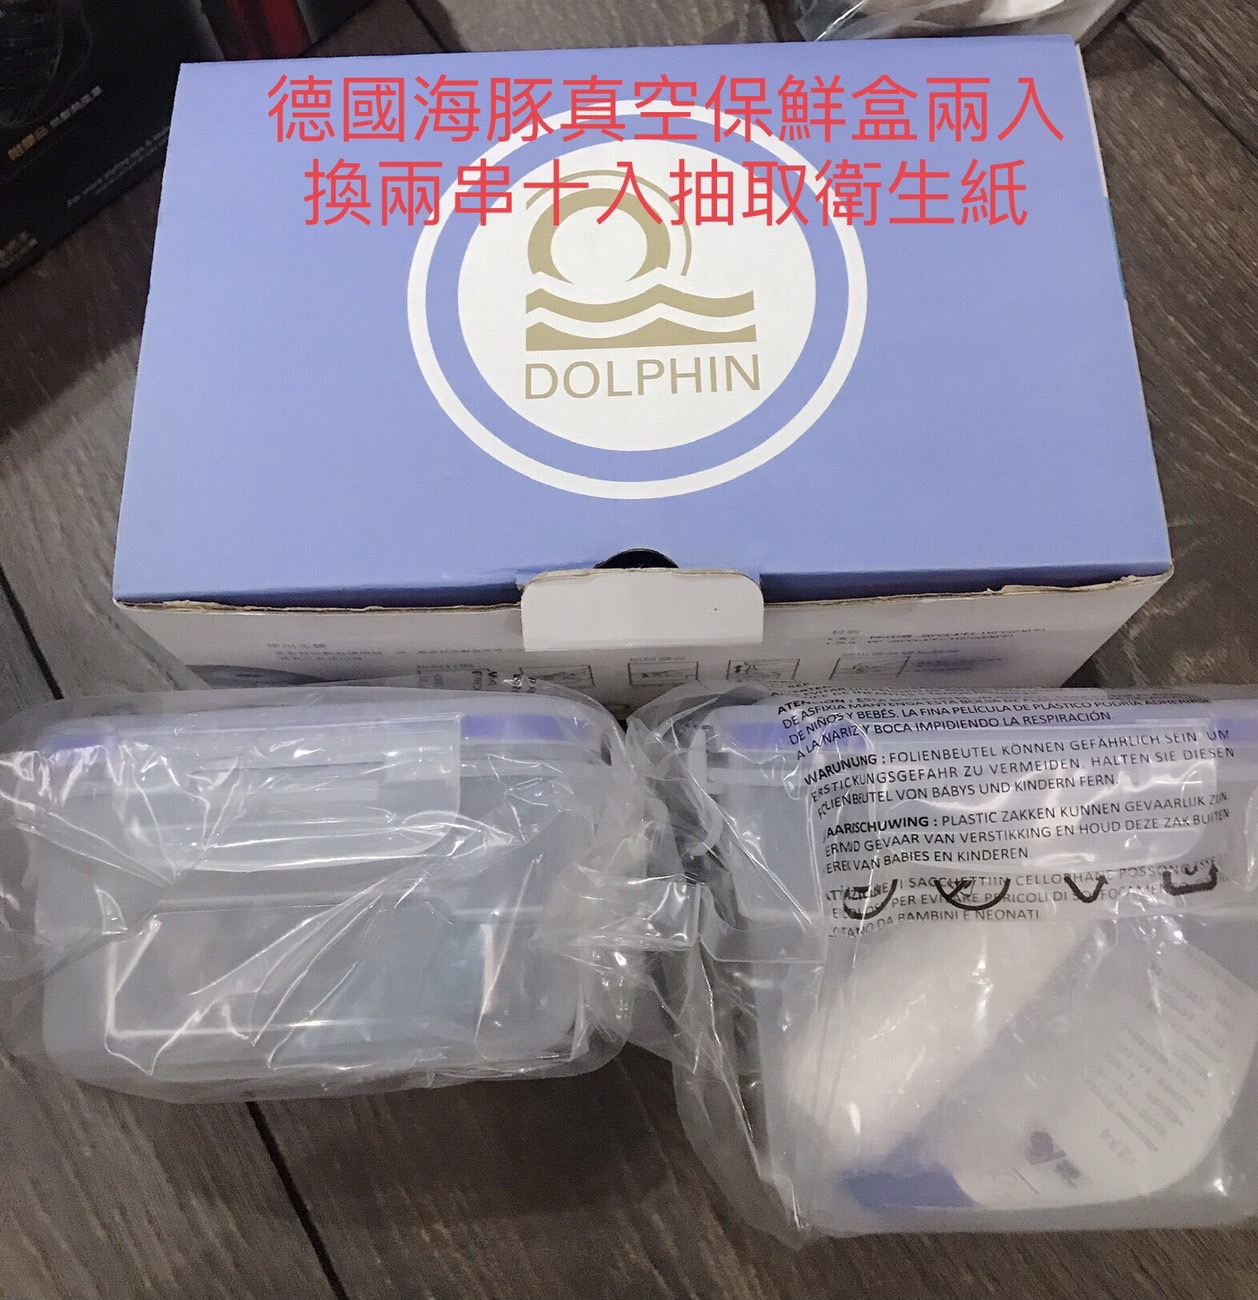 [交換] 全新保鮮盒&9成新熱水壺換衛生紙